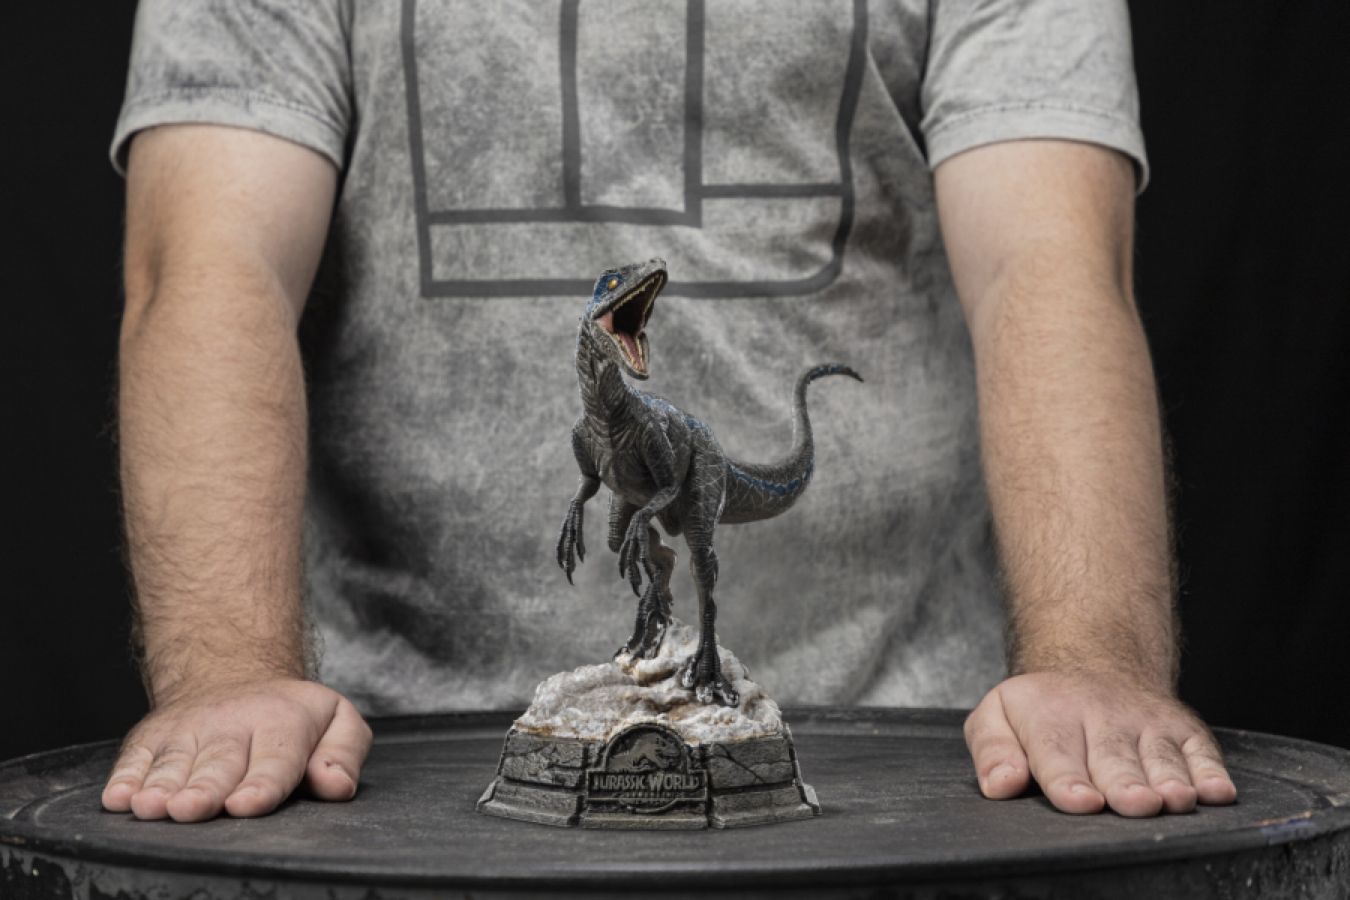 Jurassic World 3: Dominion - Blue 1:10 Scale Statue